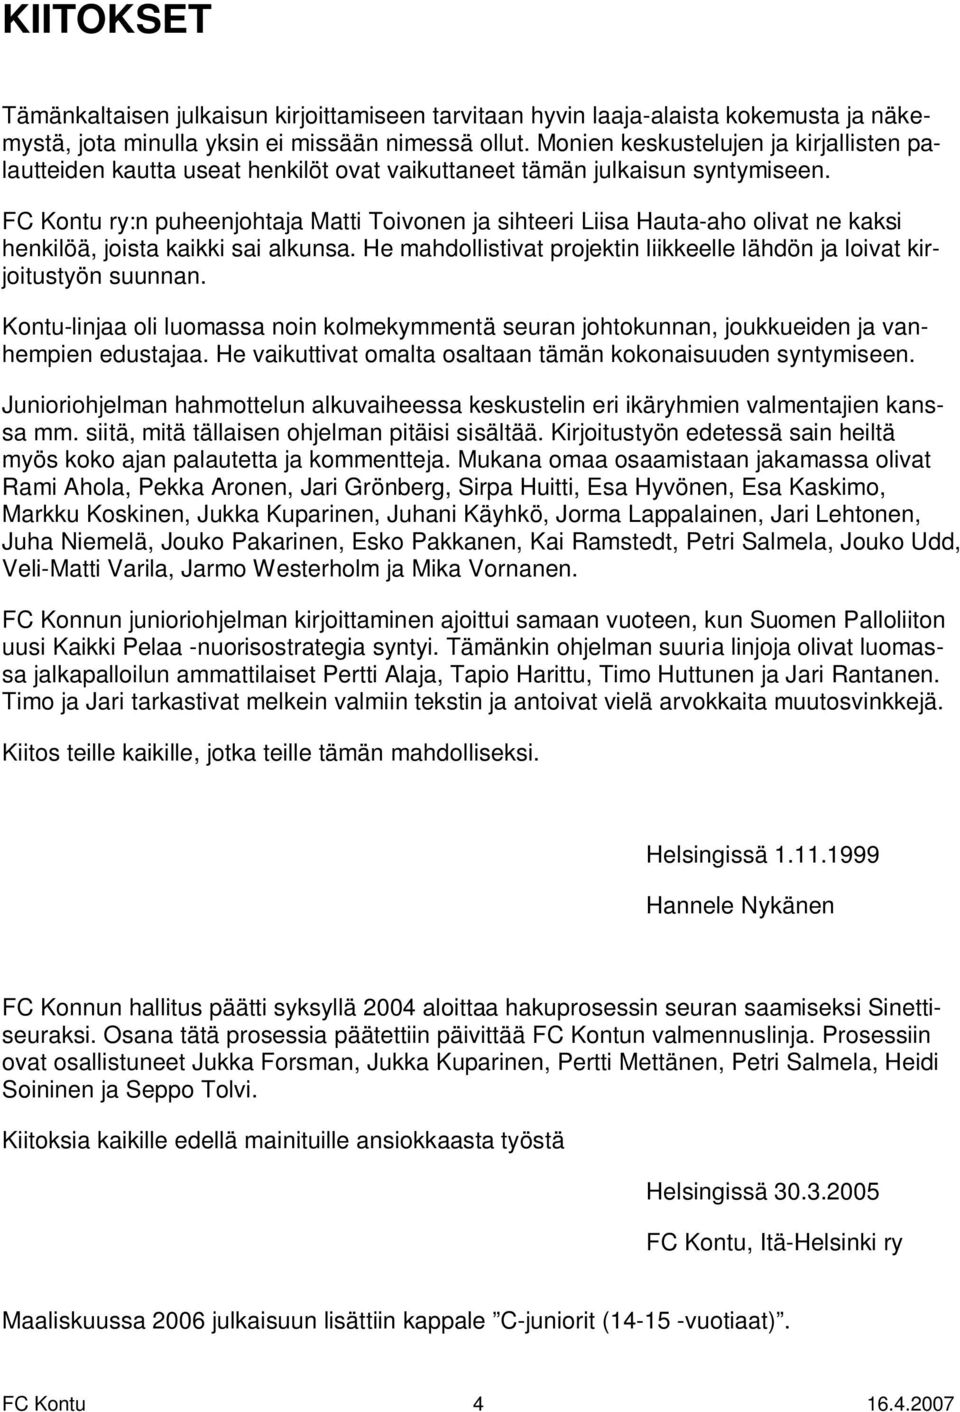 FC Kontu ry:n puheenjohtaja Matti Toivonen ja sihteeri Liisa Hauta-aho olivat ne kaksi henkilöä, joista kaikki sai alkunsa.